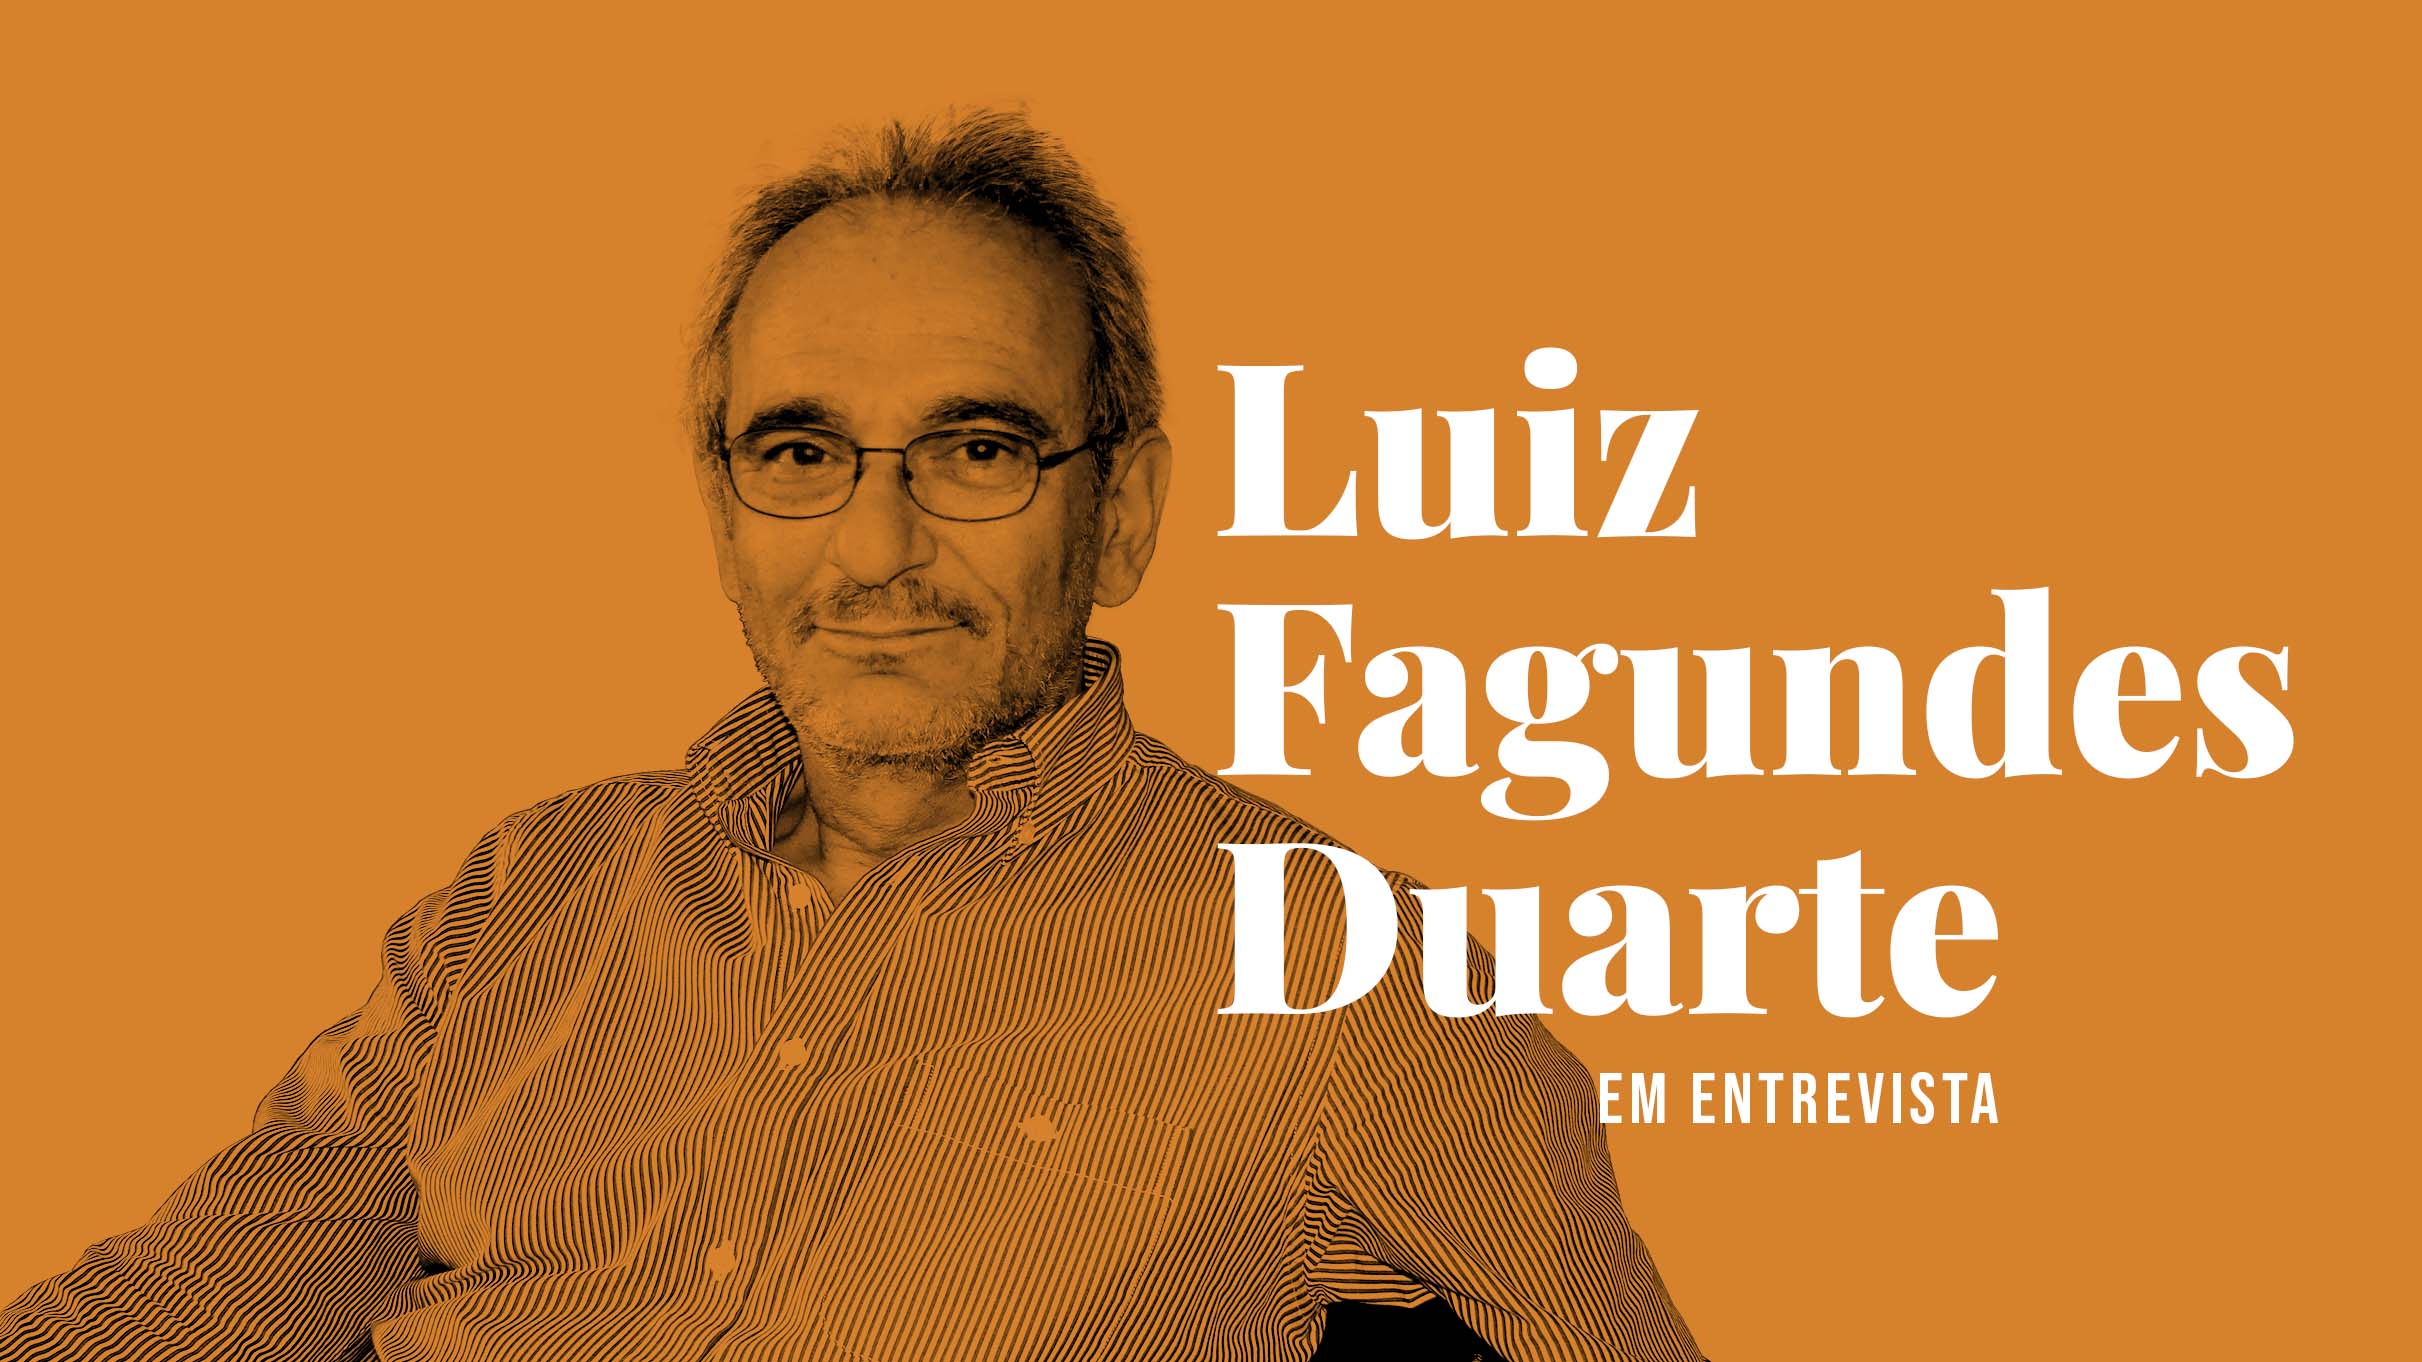 Luiz Fagundes Duarte em entrevista — «Fico inquieto por saber que há poesia e diários de Nemésio que não se podem consultar»